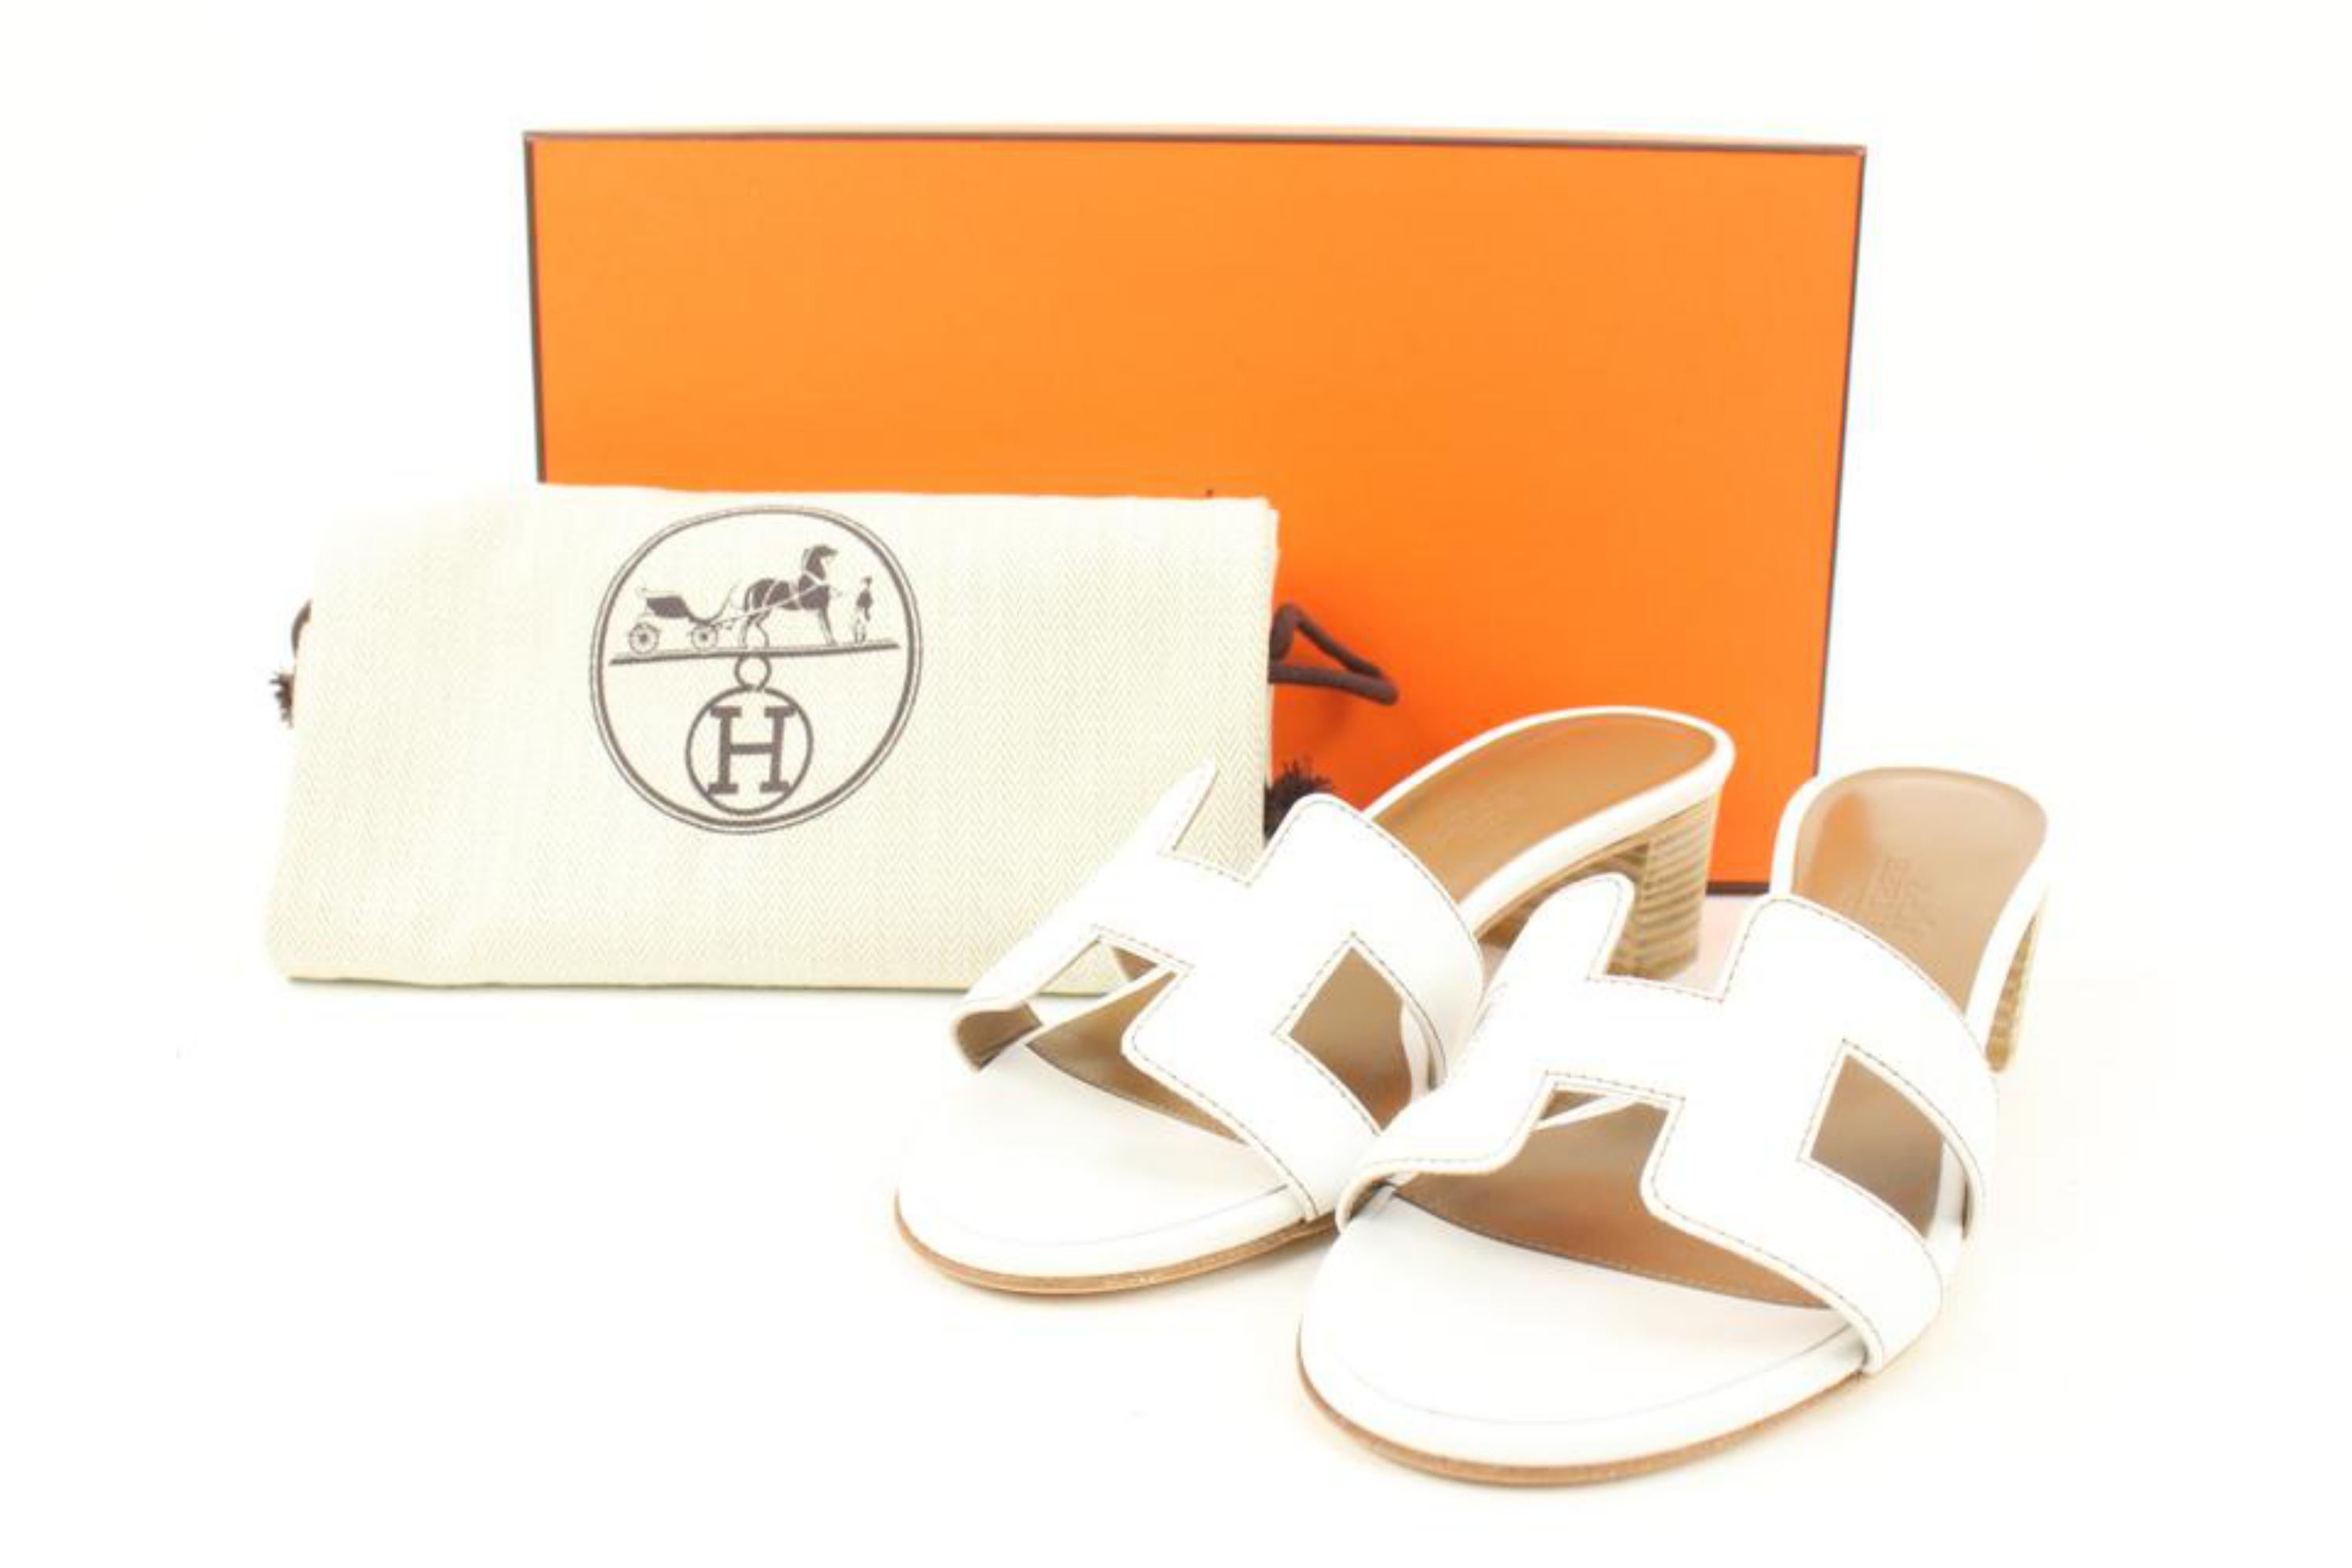 Hermès Women's 35.5 White Calfskin Blanc Oais Mule Sandals Slides S126H55
Code de date/Numéro de série : BL071002Z2011
Fabriqué en : Italie
Mesures : Longueur :  9